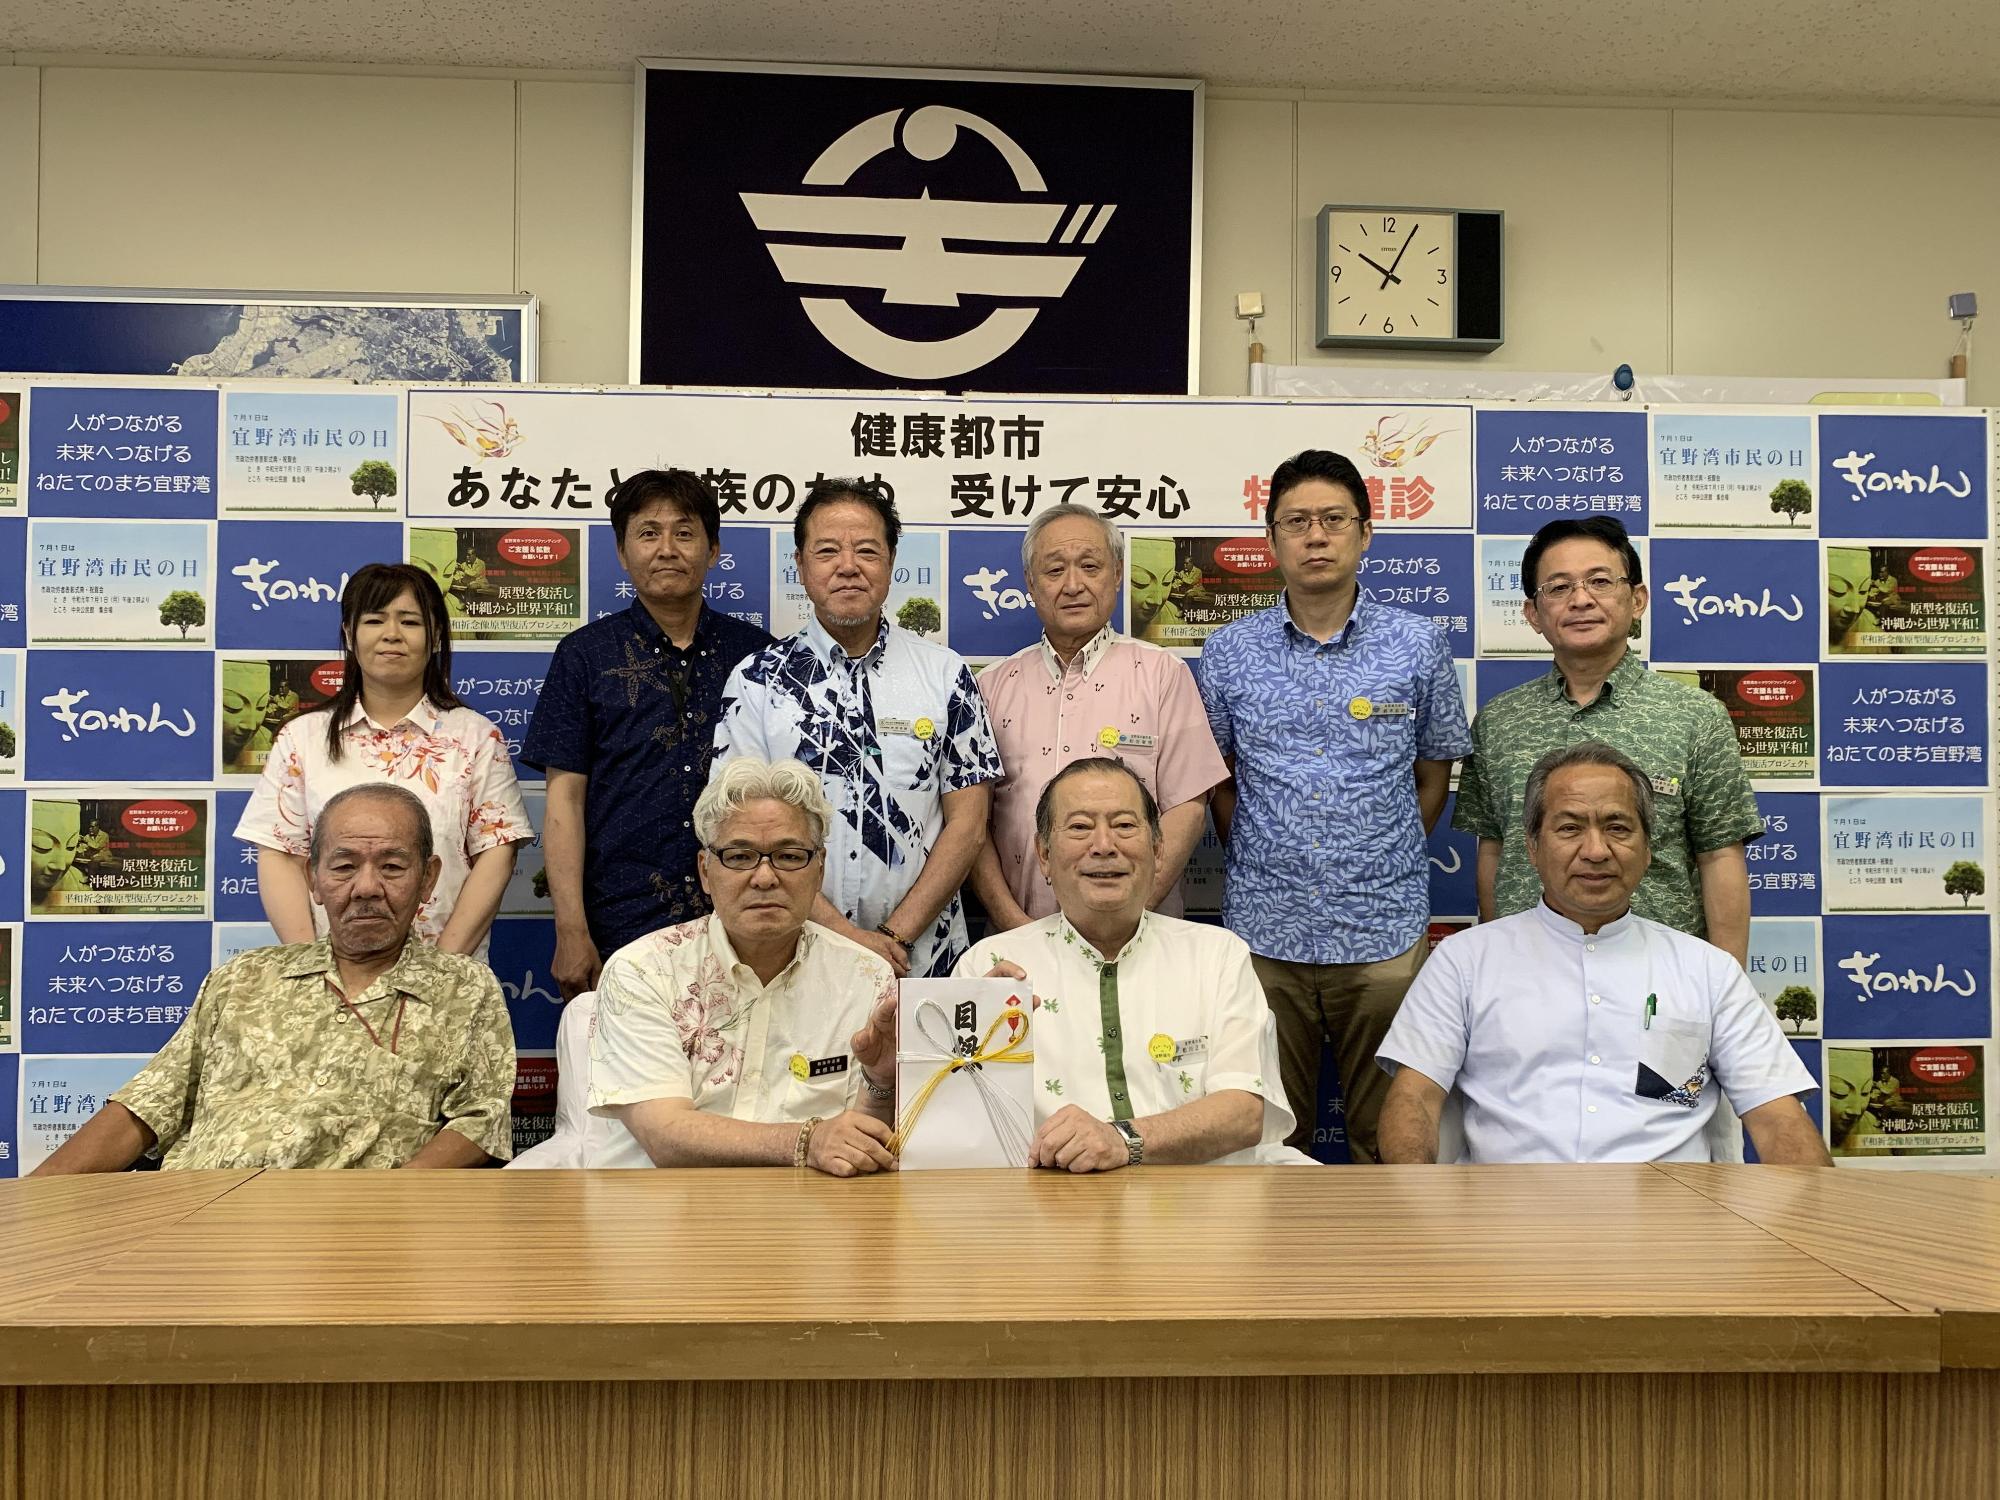 前列に4名の方々が座り、真ん中に座っている松川市長と1名の白髪の男性が目録を持っており、後方には6名の関係者の方々が笑顔で写っている集合写真